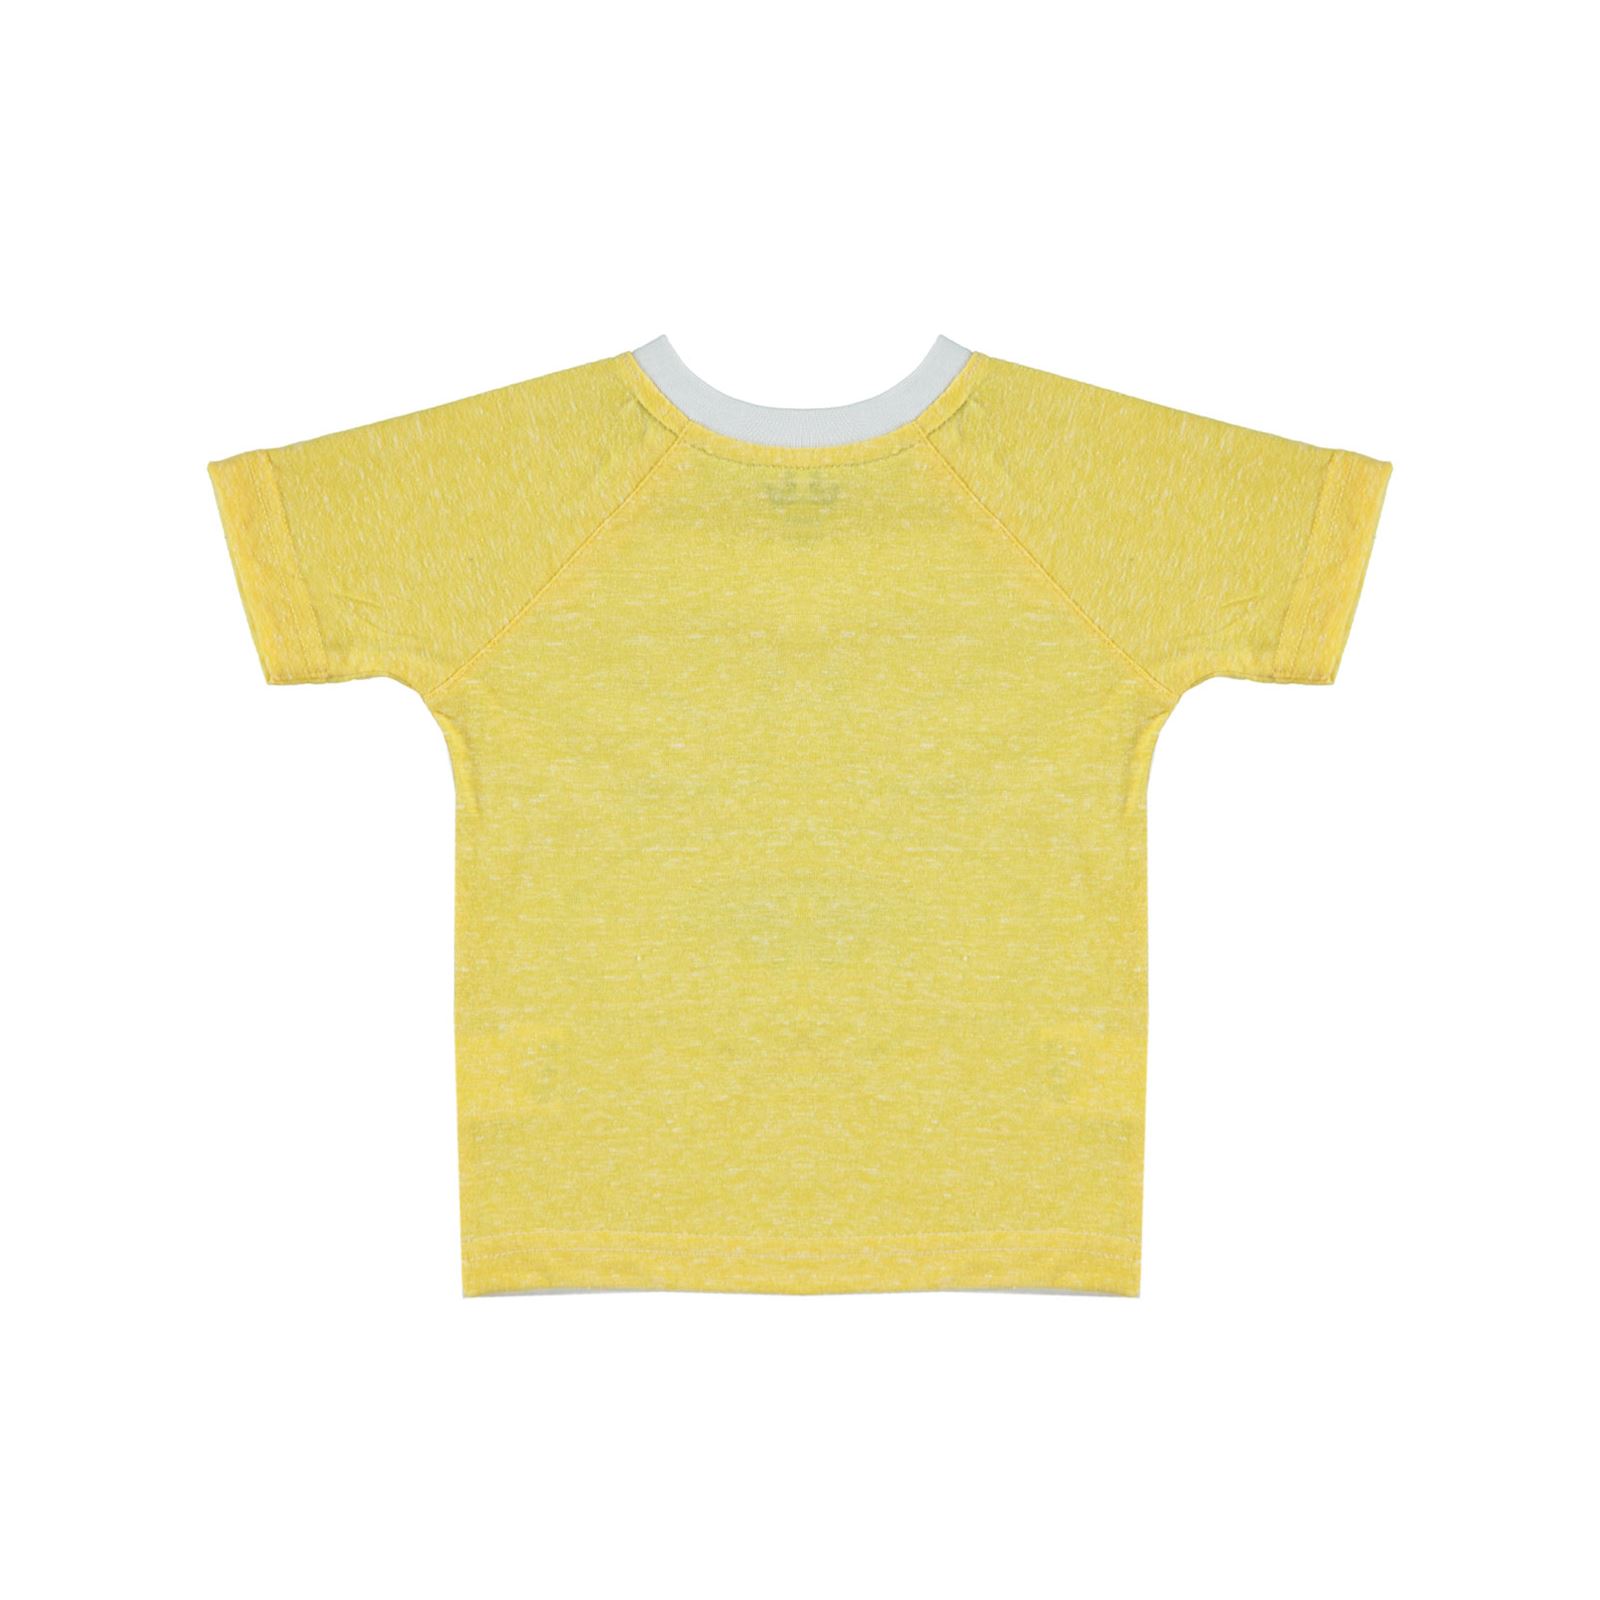 Kujju Erkek Bebek Tişört 6-18 Ay Sarı